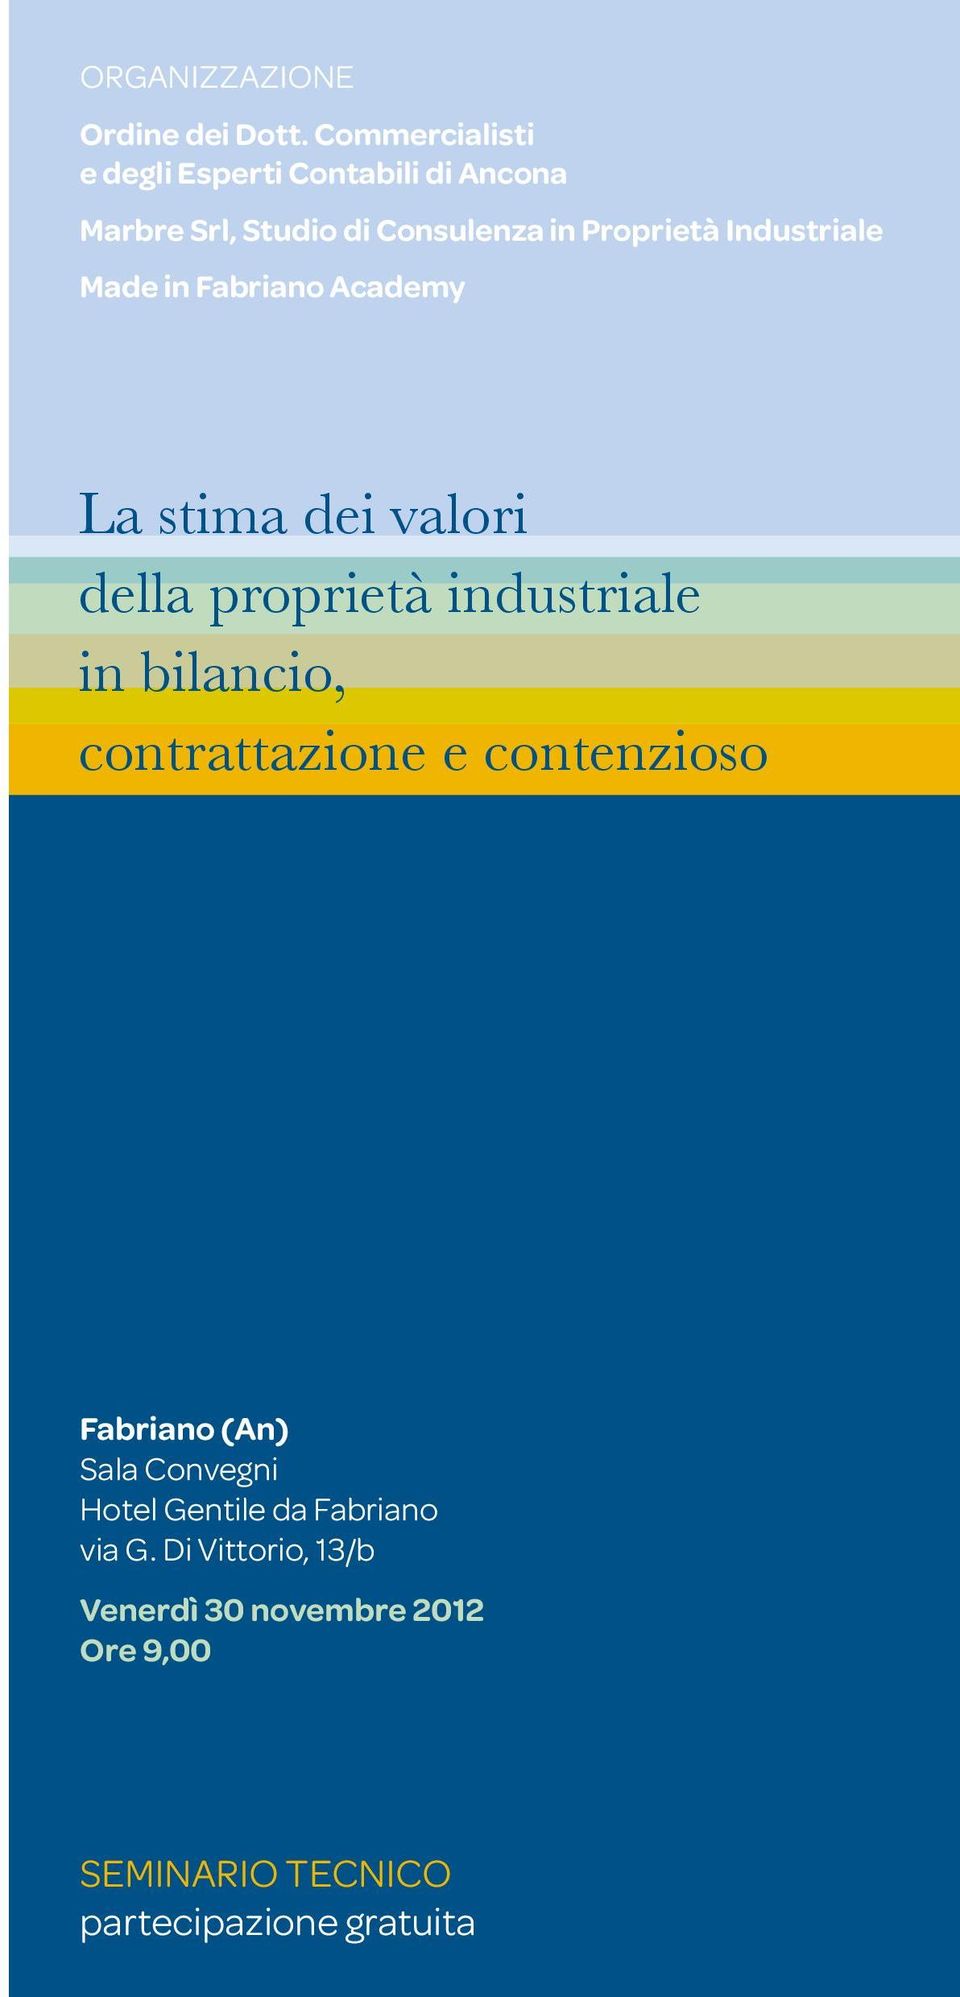 Industriale Made in Fabriano Academy La stima dei valori della proprietà industriale in bilancio,